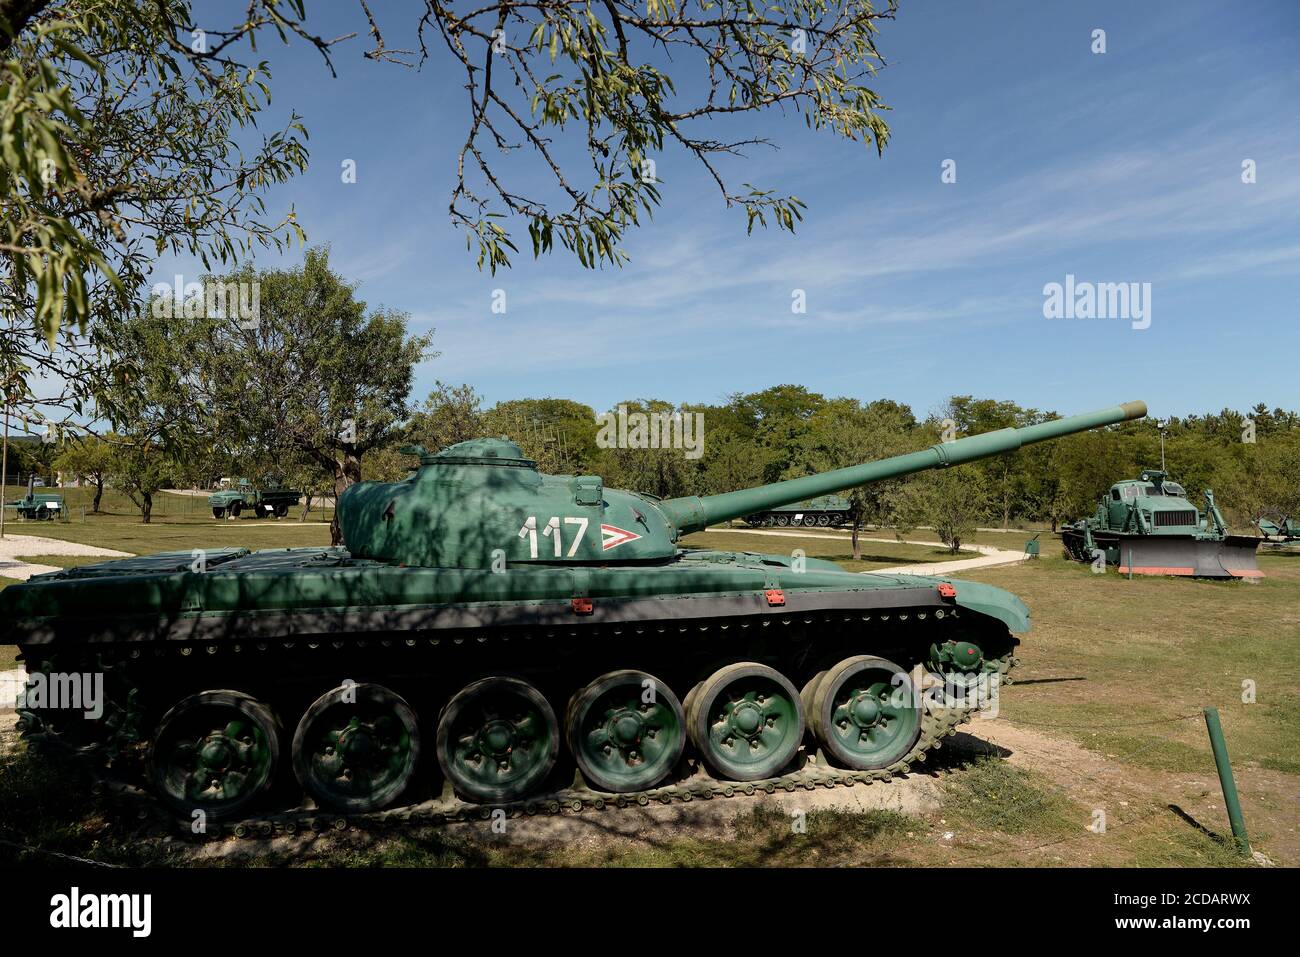 Zanka, Ungarn. August 2020. Der Hauptkampfpanzer T-72 wird im Museum ausgestellt.das Militärmuseum ZÃnka ist eine Außenausstellung mit einer Vielzahl von Rüstungen, die von den ungarischen Verteidigungskräften verwendet werden. ZÃnka ist ein Dorf in der Gespanschaft Veszprém am Ufer des Plattensees, 150 km südwestlich der Hauptstadt Budapest, Ungarn. Kredit: Paul Lakatos/SOPA Images/ZUMA Wire/Alamy Live Nachrichten Stockfoto